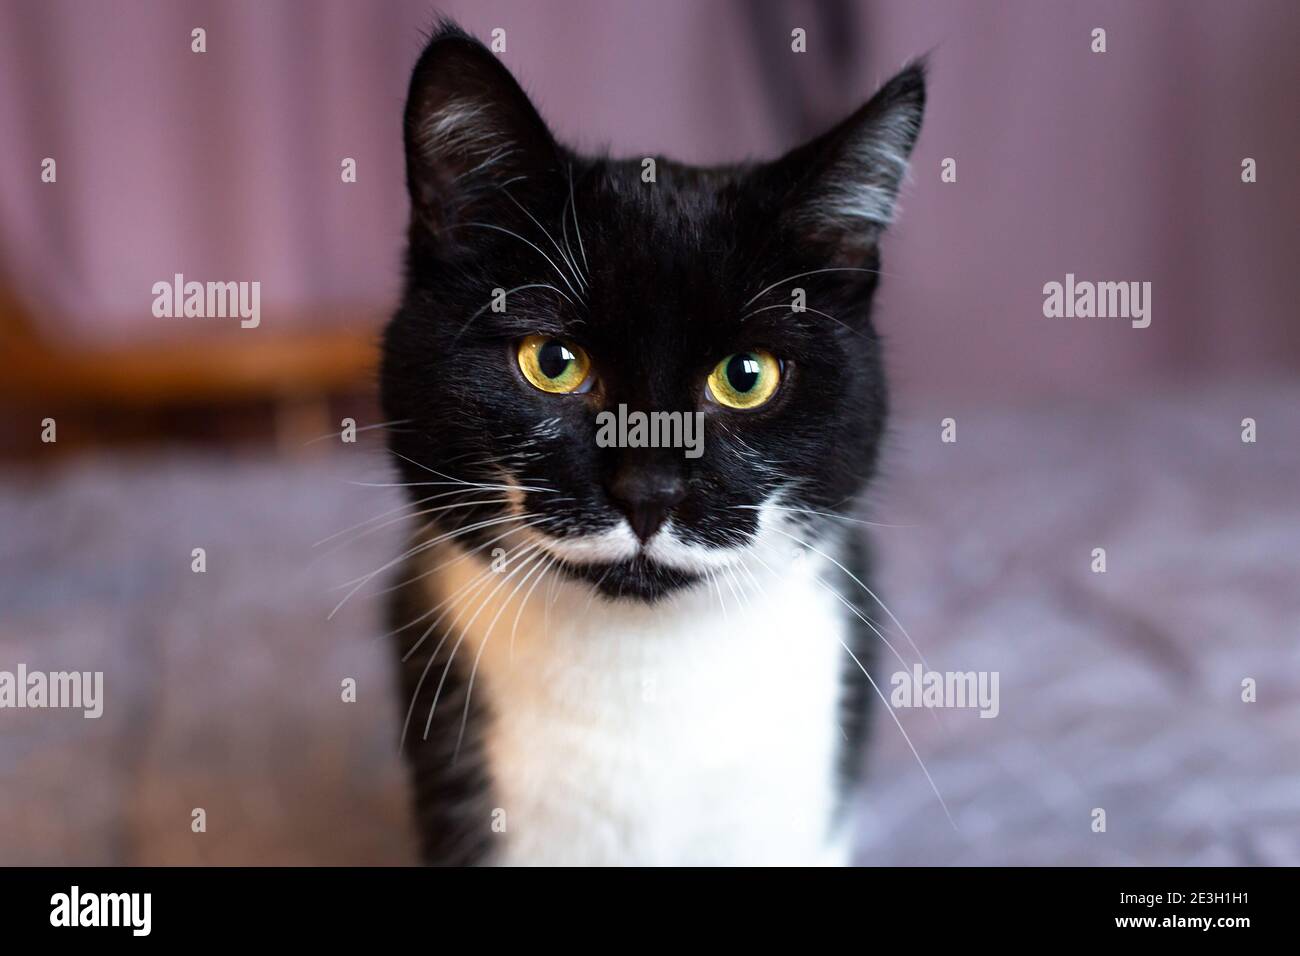 Un magnifique chat noir avec une moustache blanche regarde l'appareil photo avec des yeux jaunes. Banque D'Images